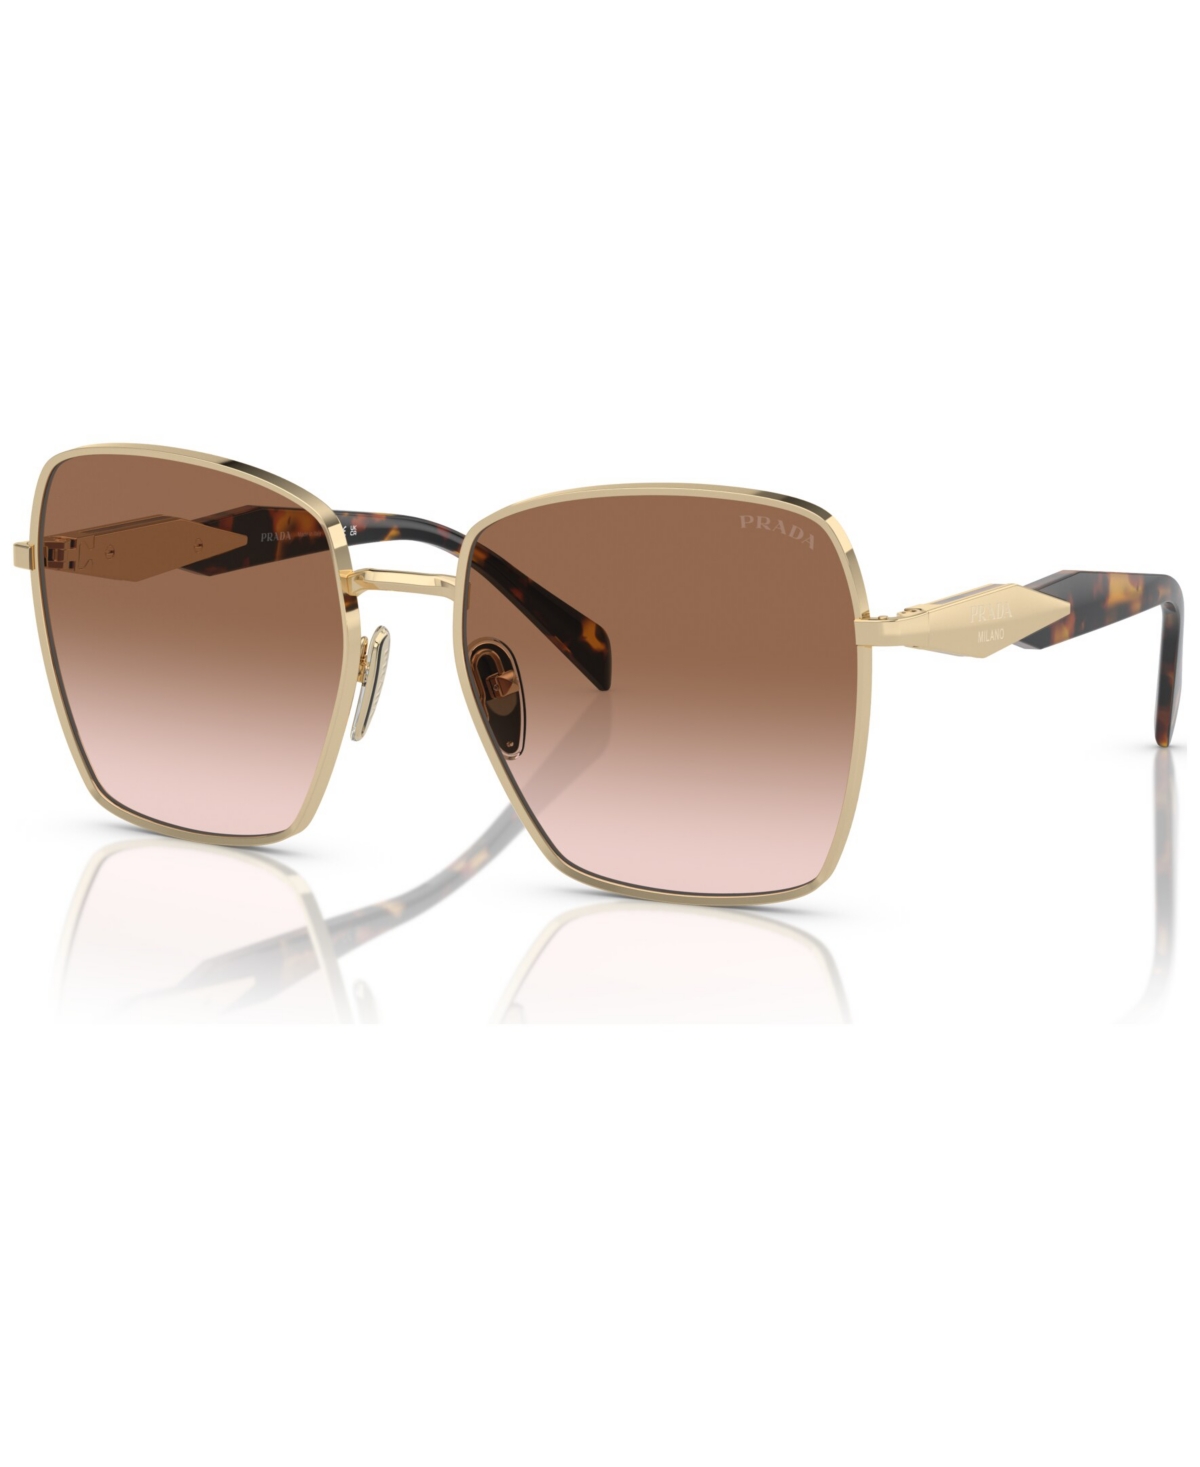 Prada Women's Sunglasses, Pr 64zs In Pale Gold-tone